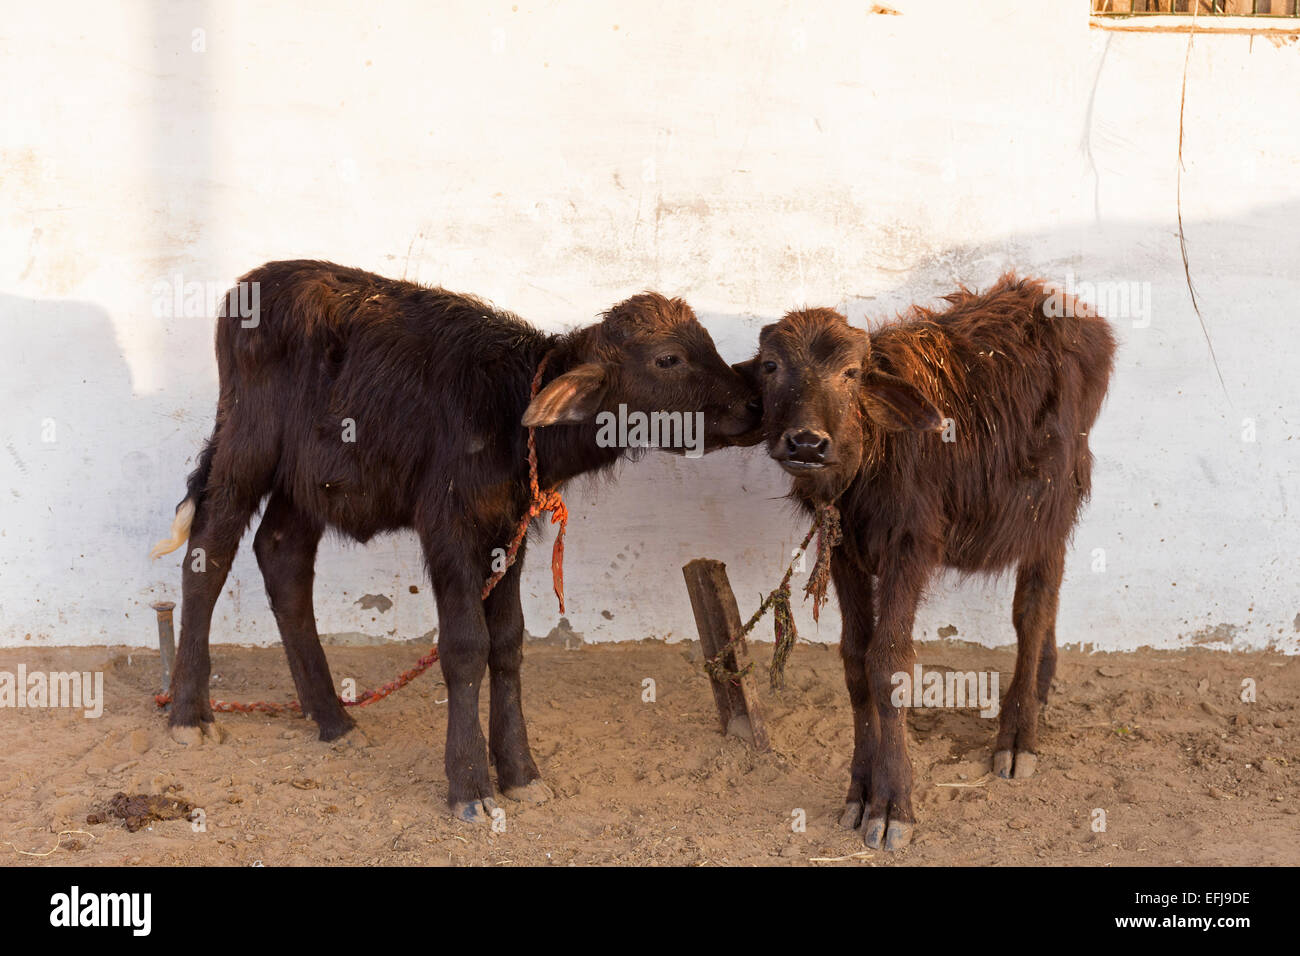 La India, Uttar Pradesh, Agra, dos becerros Foto de stock